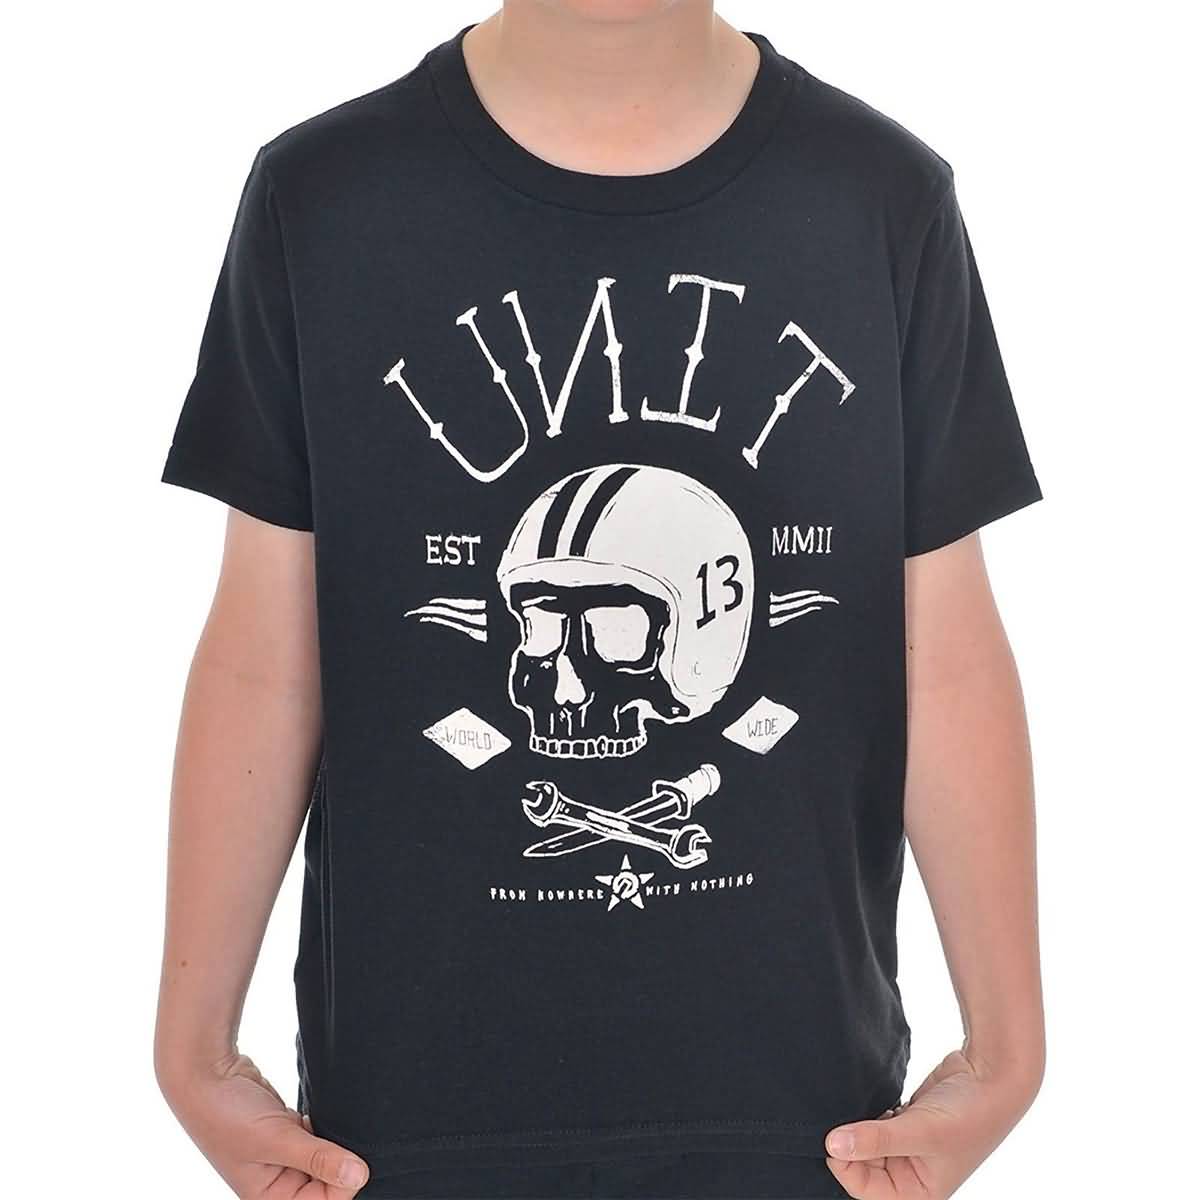 Unit Death Row Youth Boys Short-Sleeve Shirts-U14330000